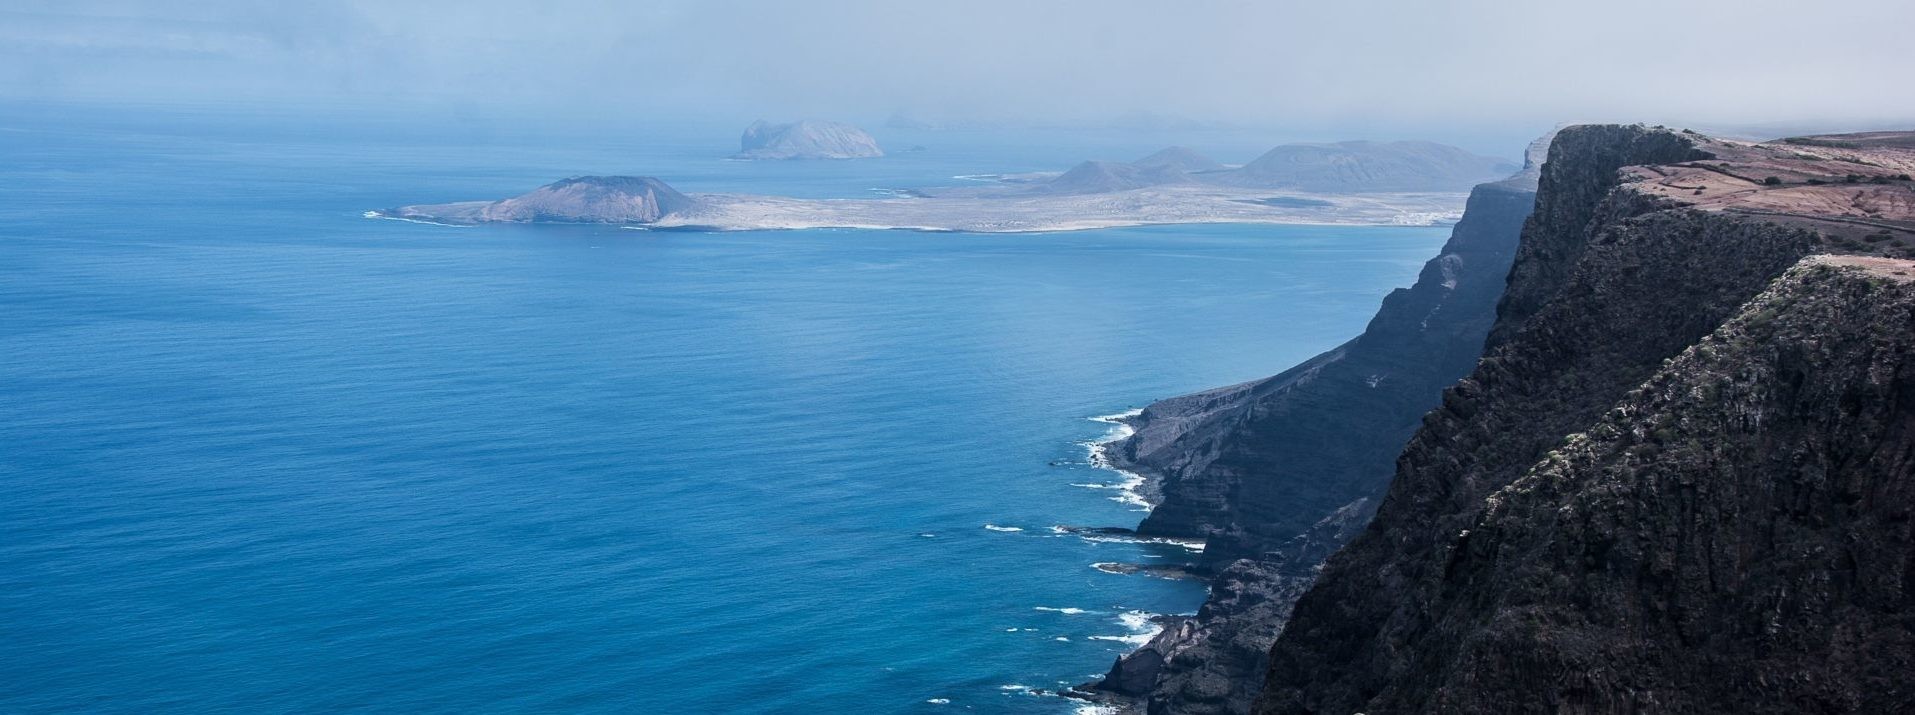 Żeglowanie na Wyspy Kanaryjskie: Teneryfę i Lanzarote